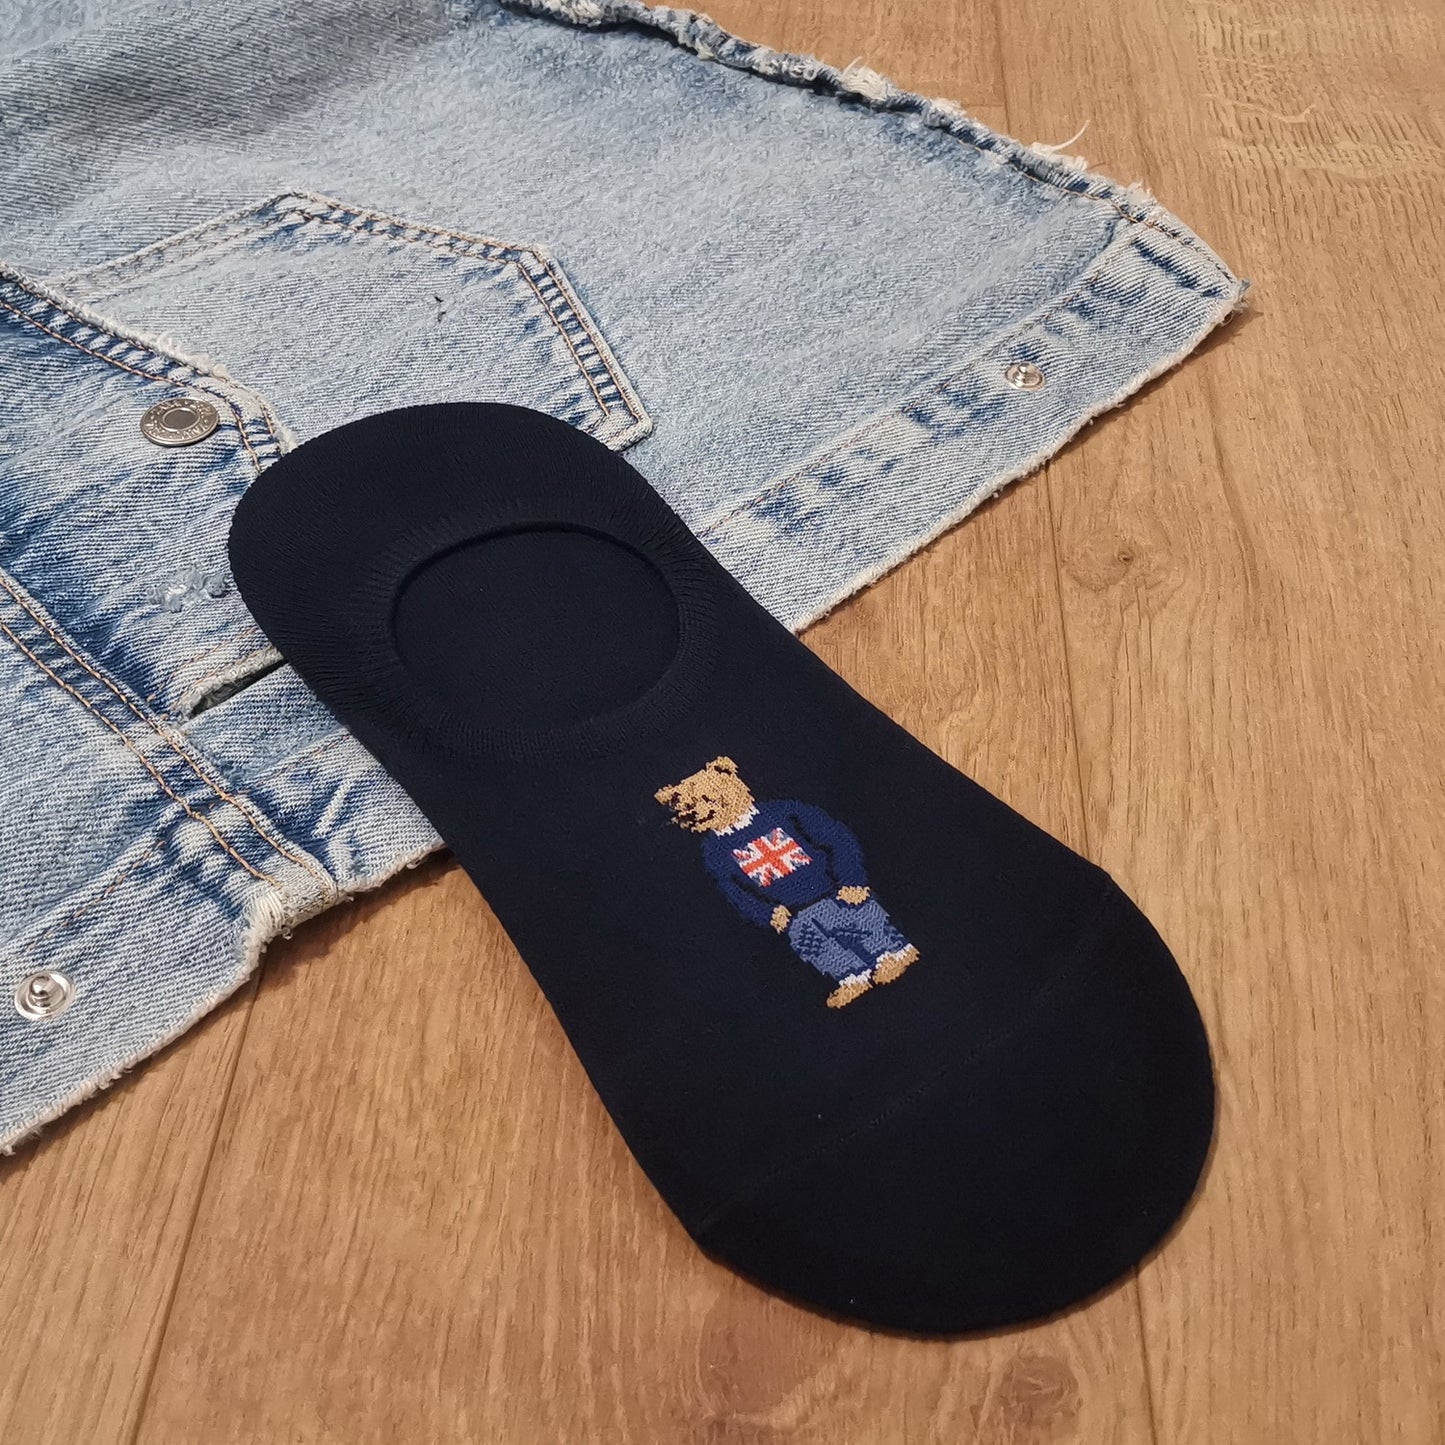 Unique Gentleman Bear Socks C